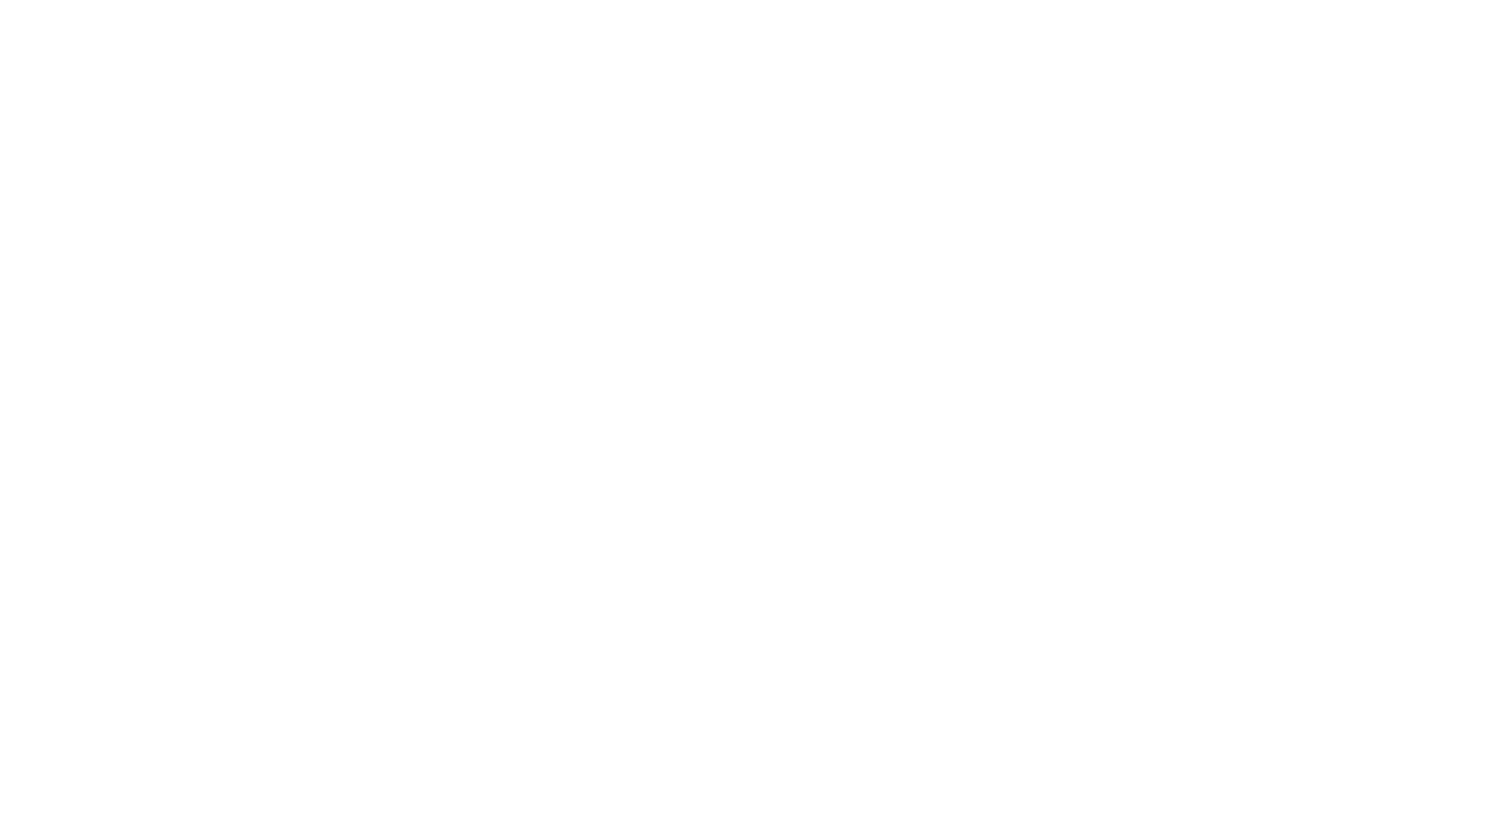 A Little Bit Wilder